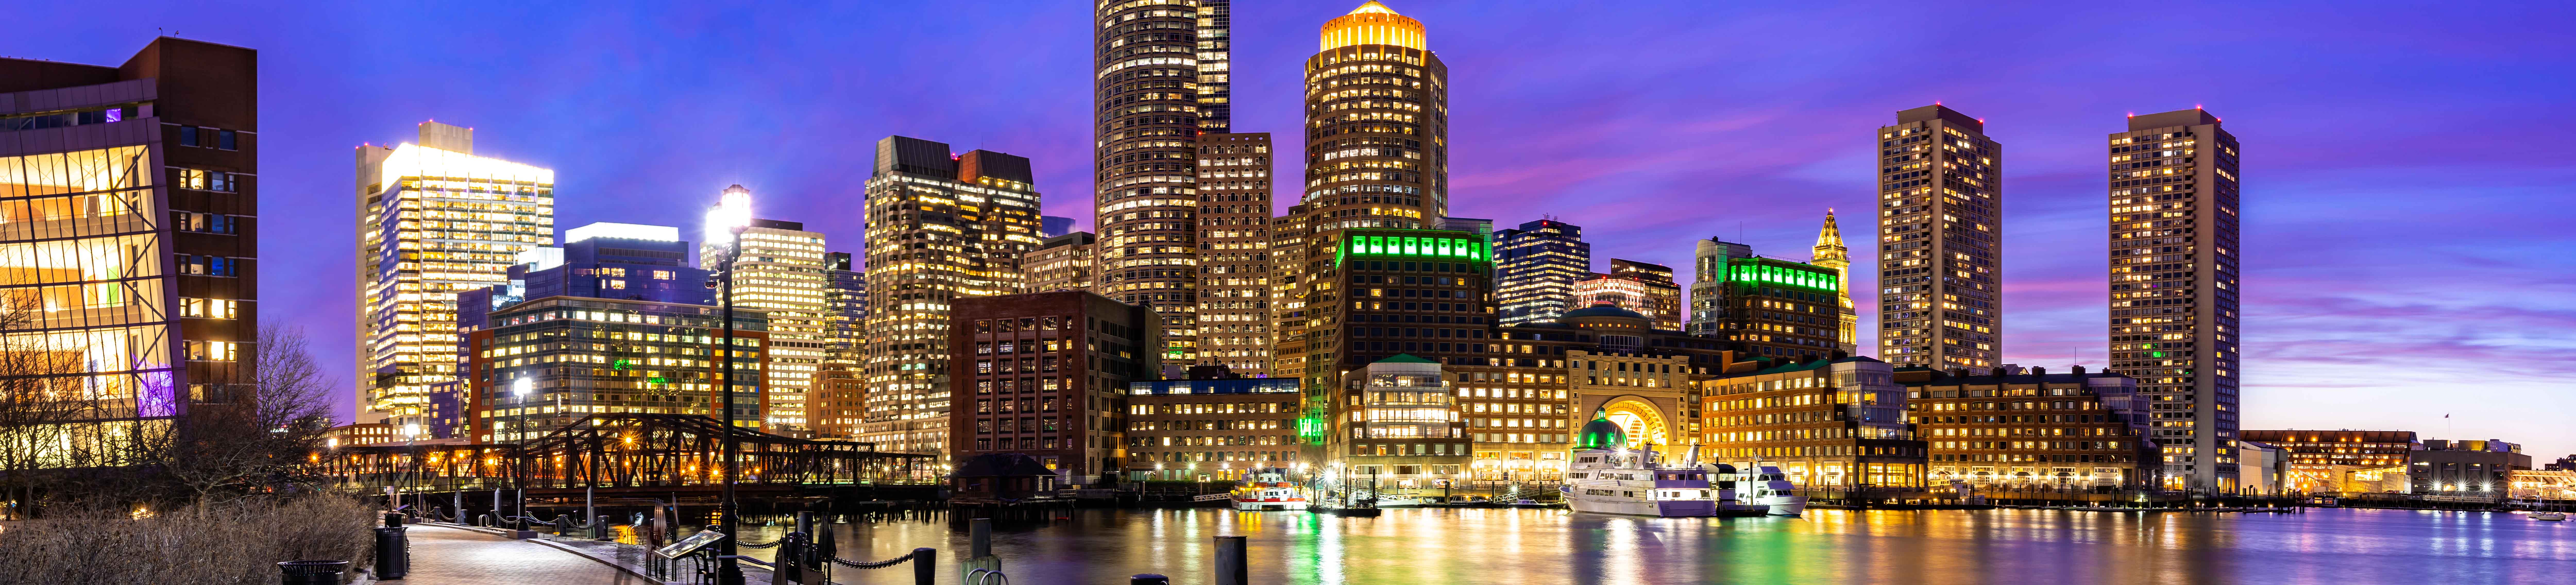 Boston : une ville des Etats-Unis aux nombreux charmes